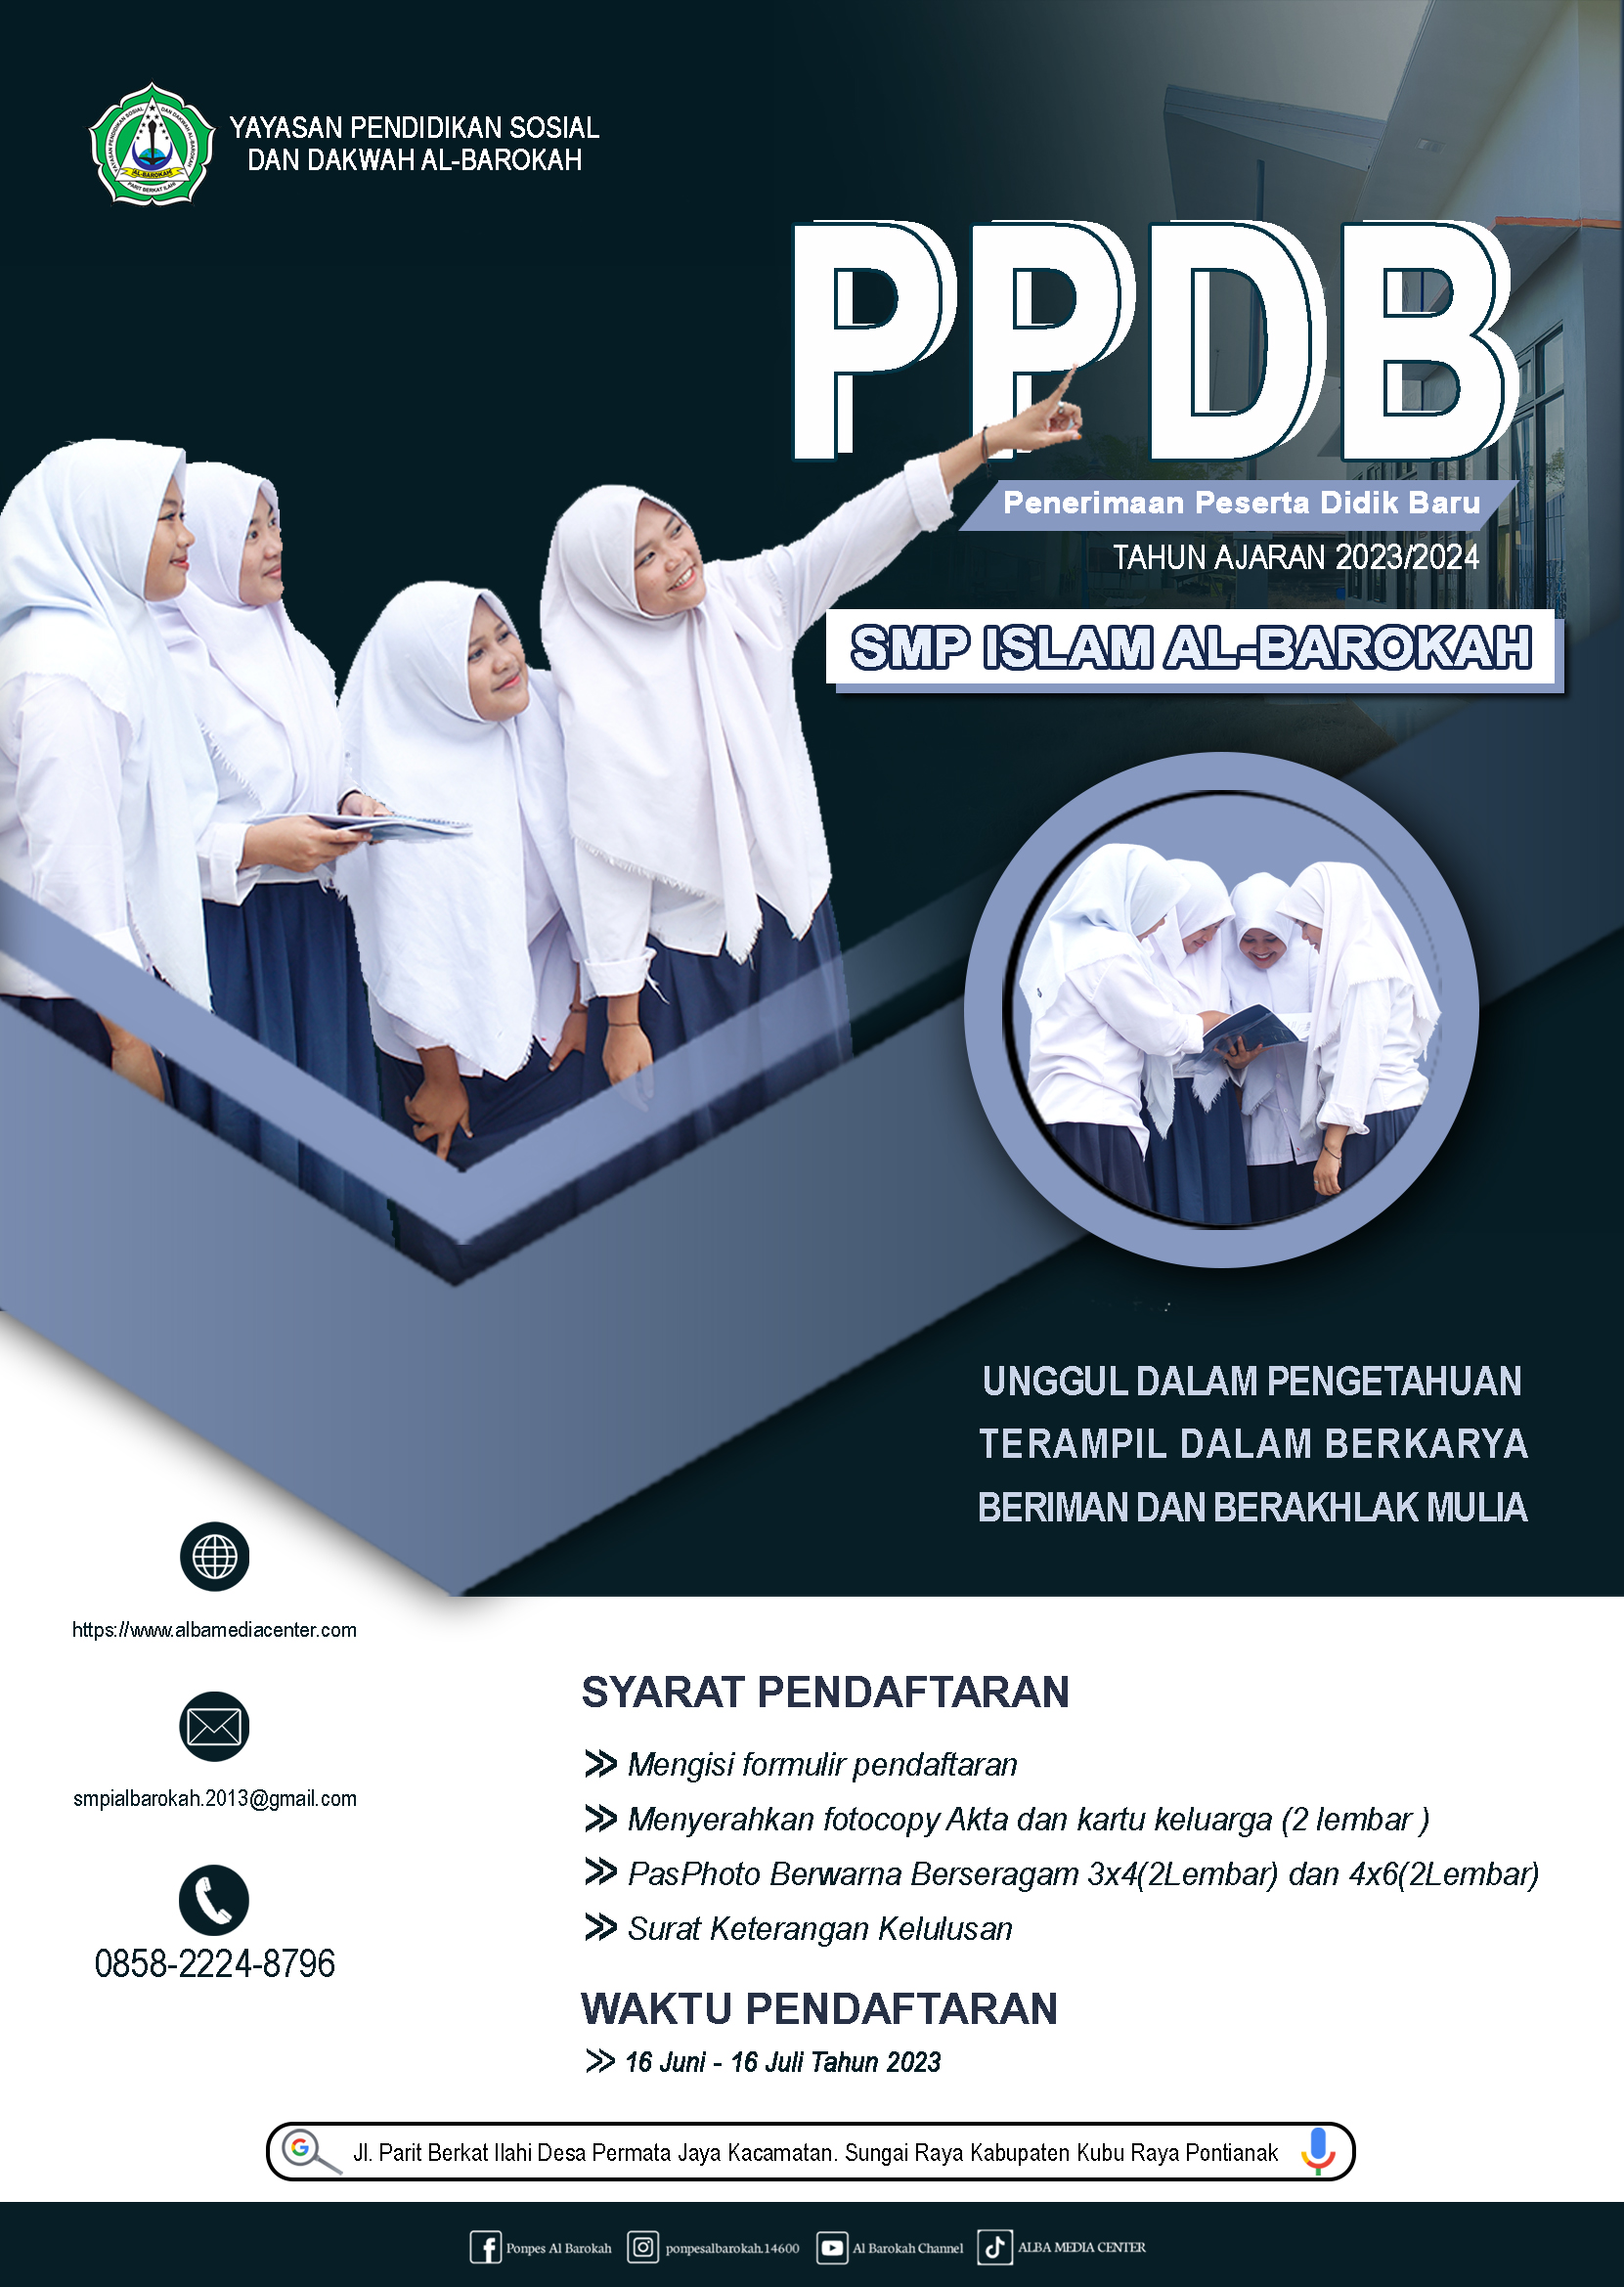 PPDB Penerimaan Peserta Didik Baru SMP Islam Al-Barokah Tahun 2023/2024